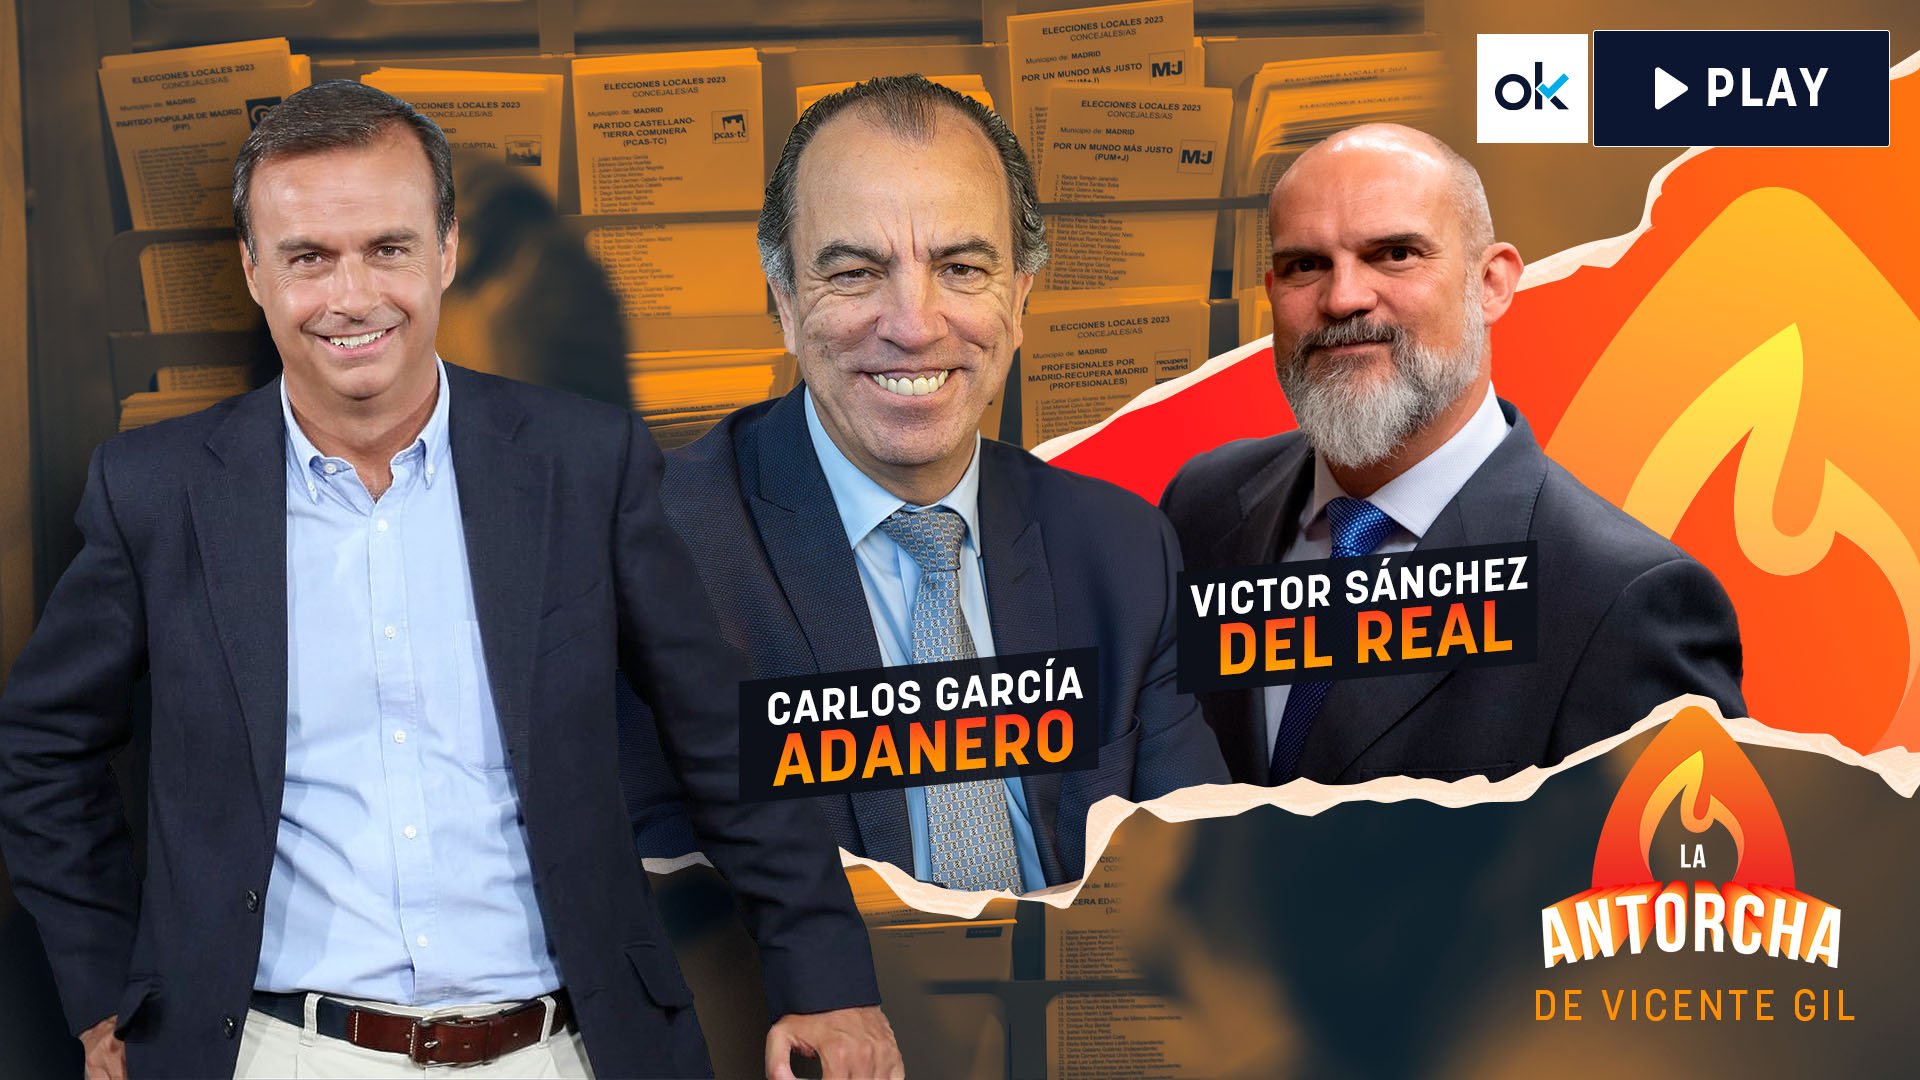 Vicente Gil, Carlos García Adanero y Víctor Sánchez del Real